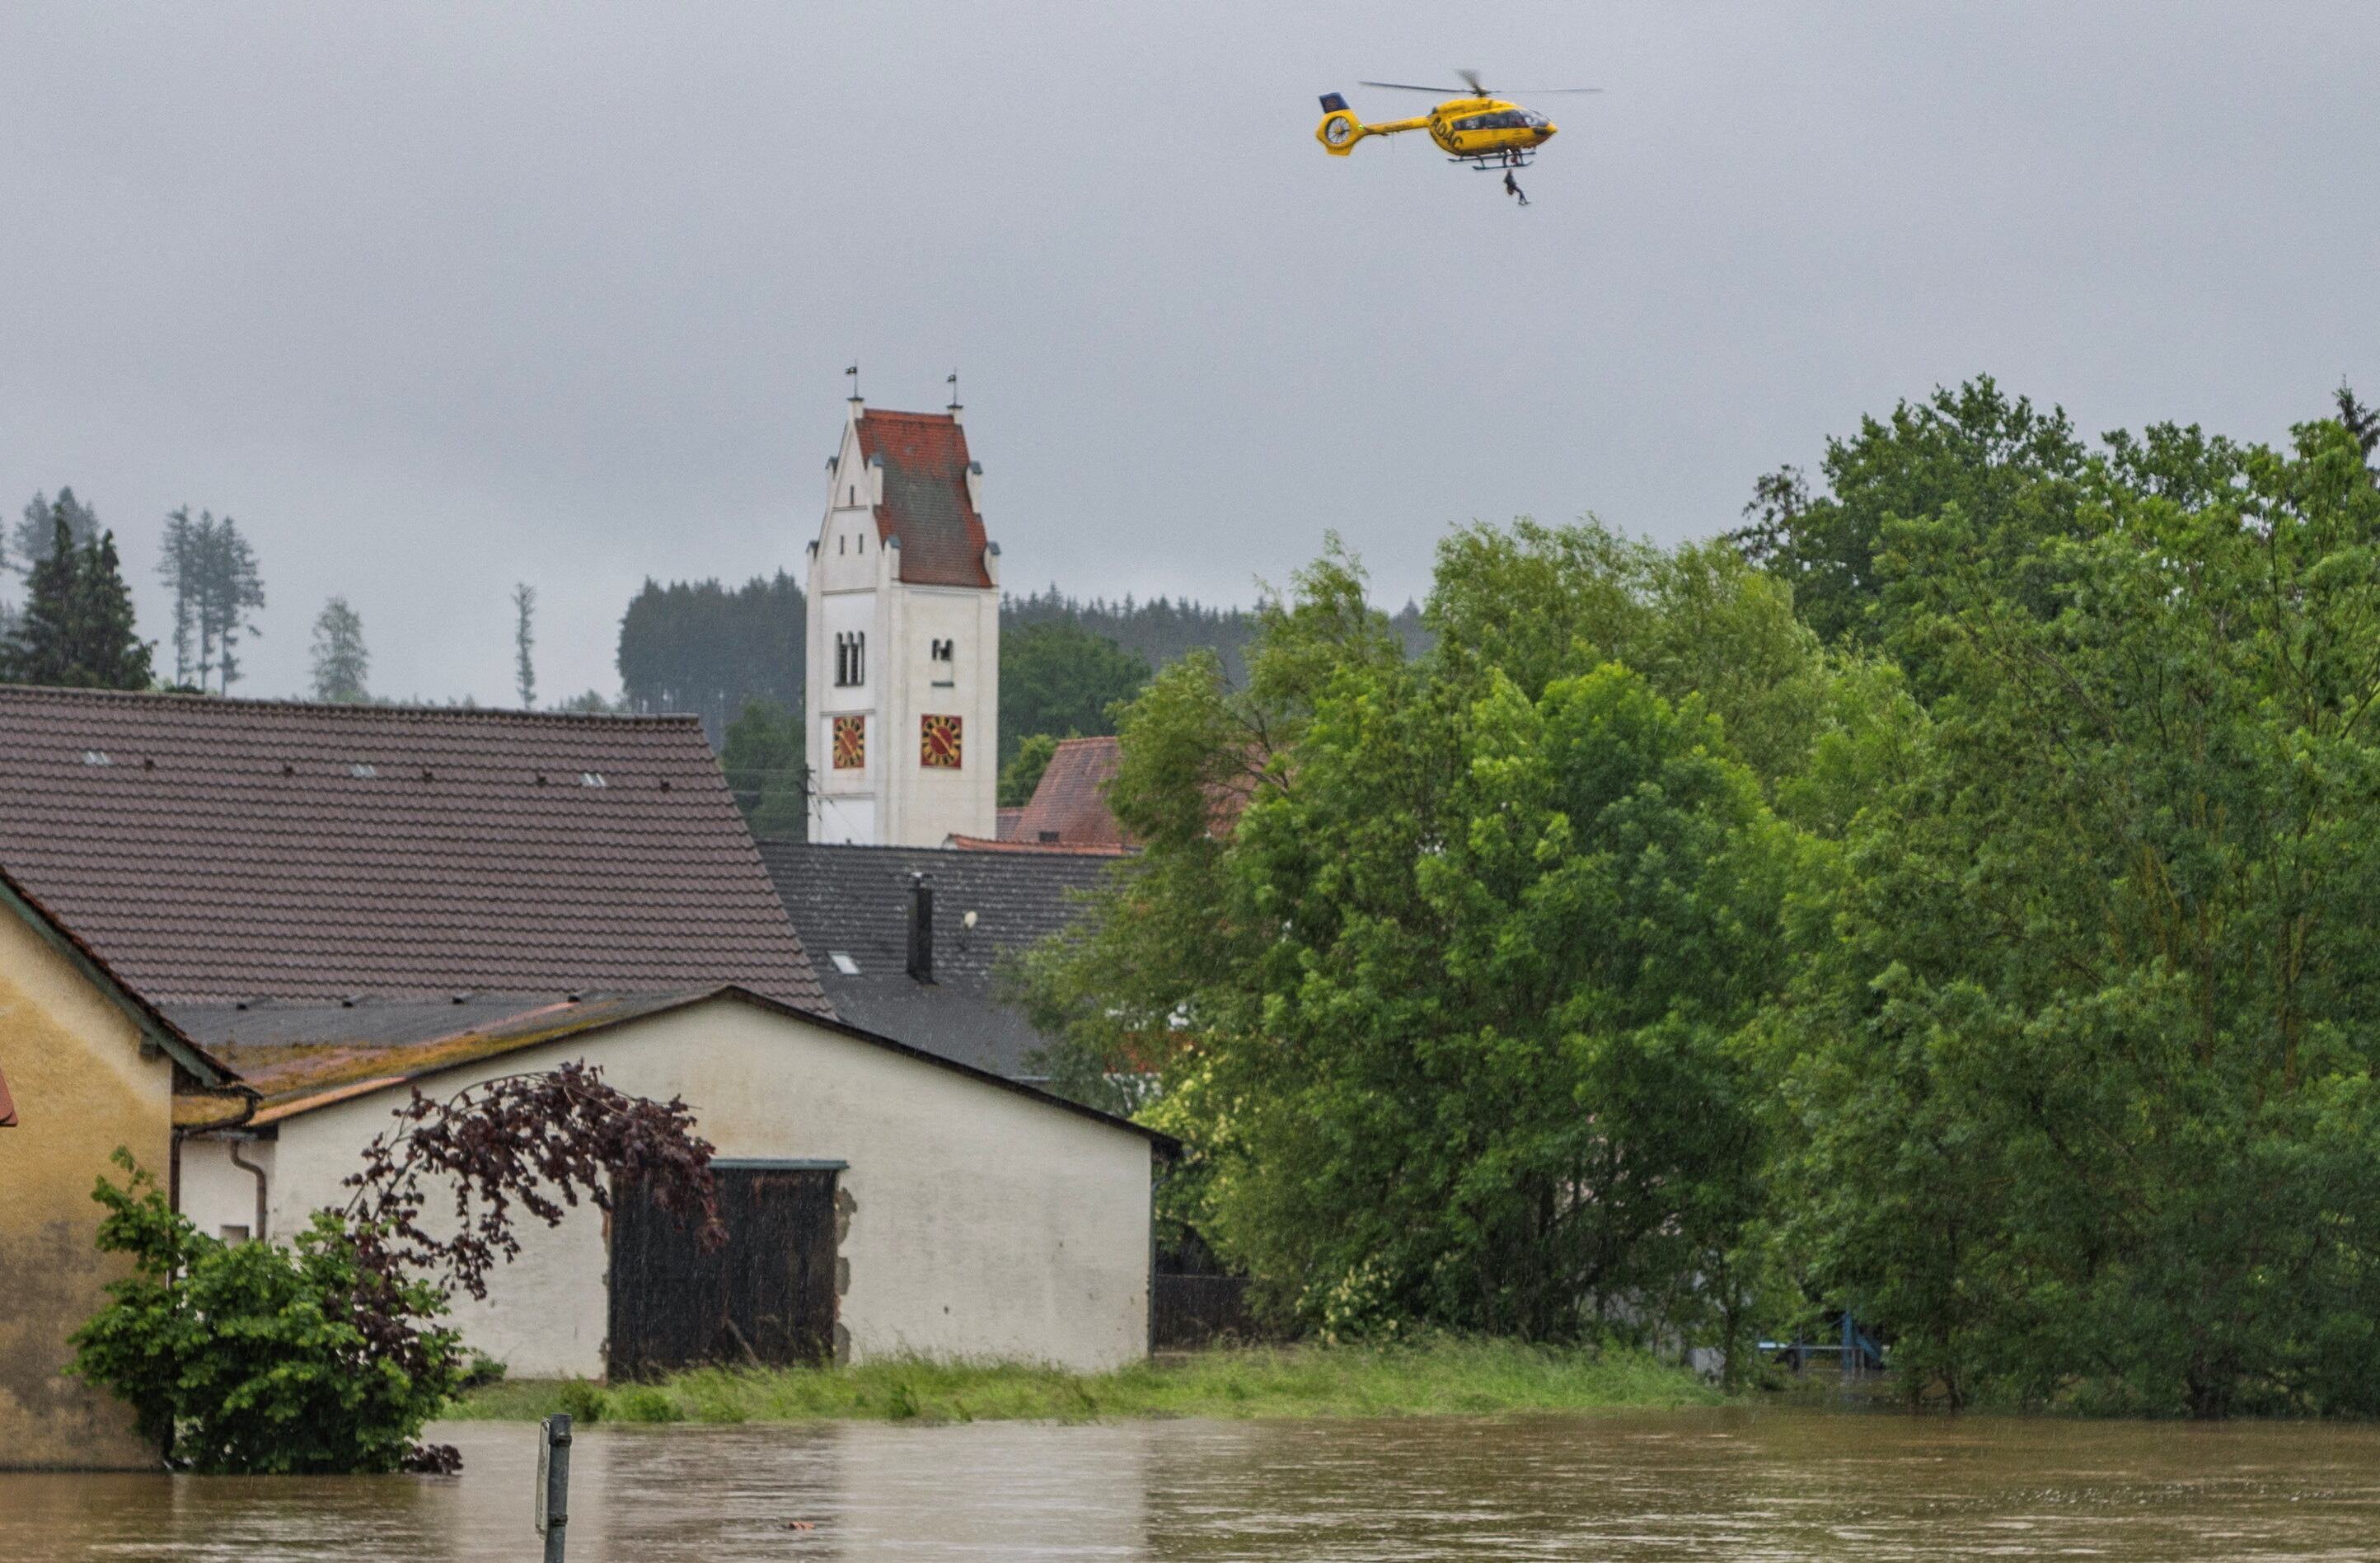 Un helicóptero de emergencias trabaja en una zona inundada en Fischach, en el estado federado de Baviera.